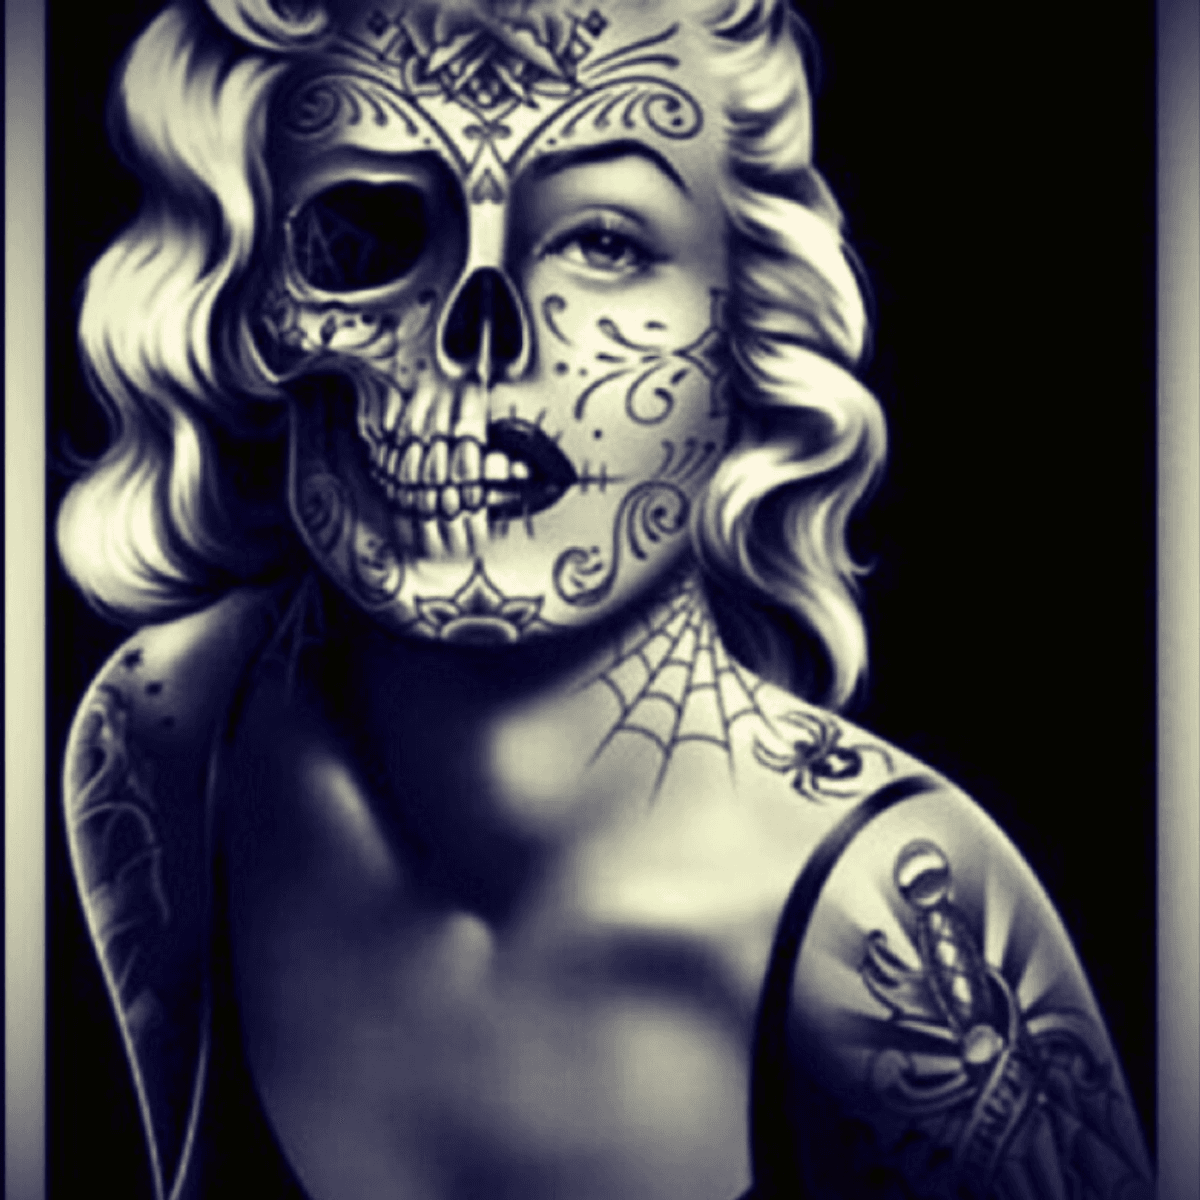 skeleton pin up girl tattoo